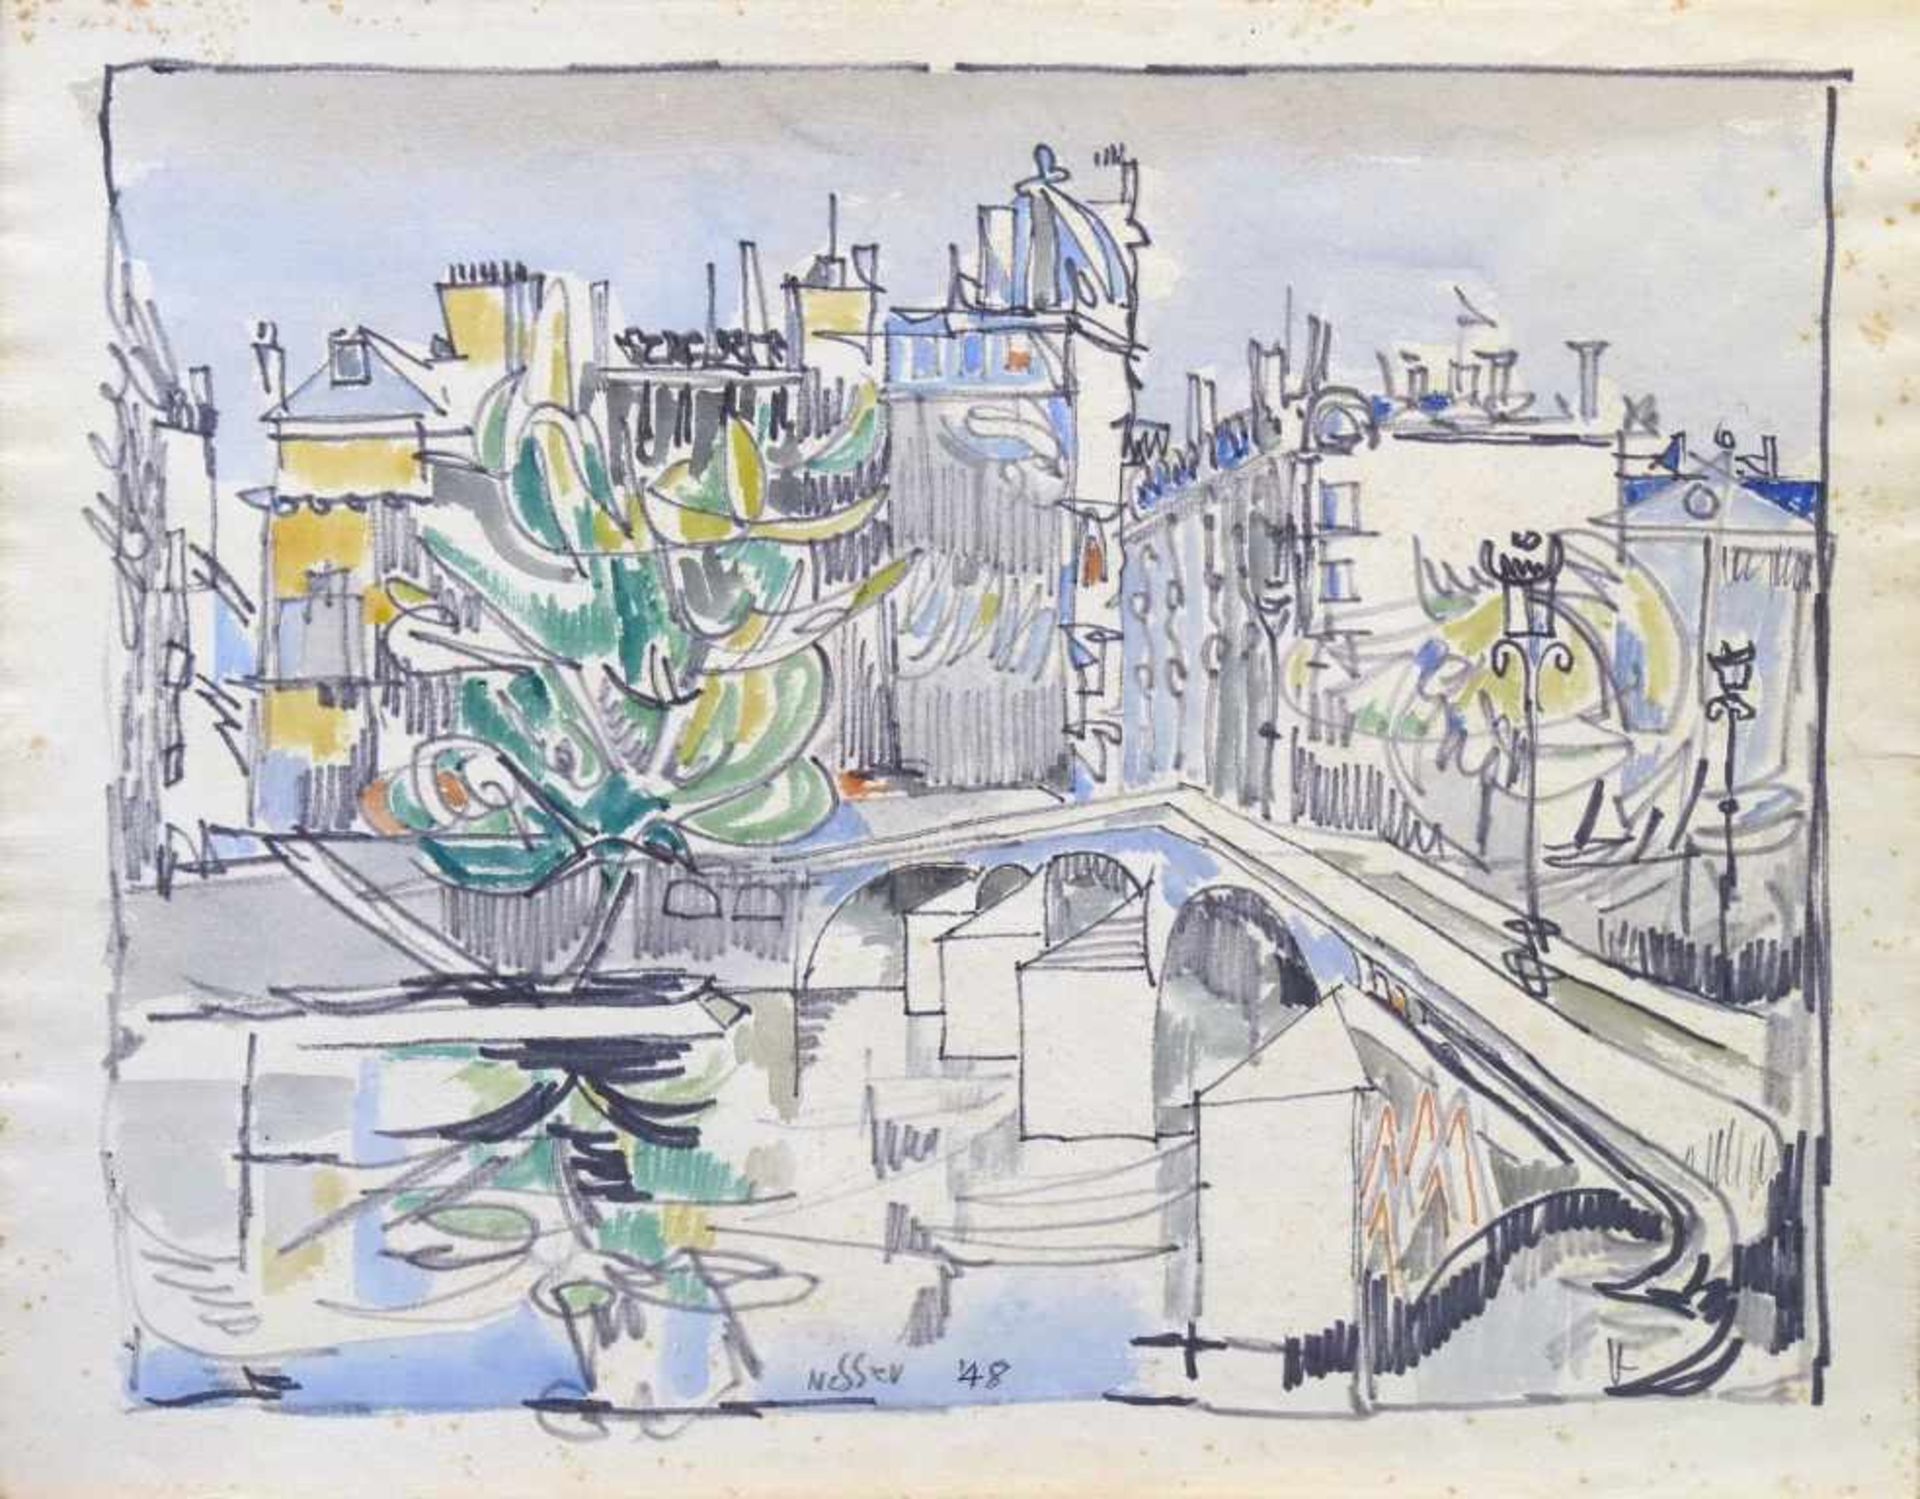 NESSLER, WALTER: "Paris, Pont Neuf", 1948Graphit, Tusche und Aquarell auf Bütten27,5 x 34,8